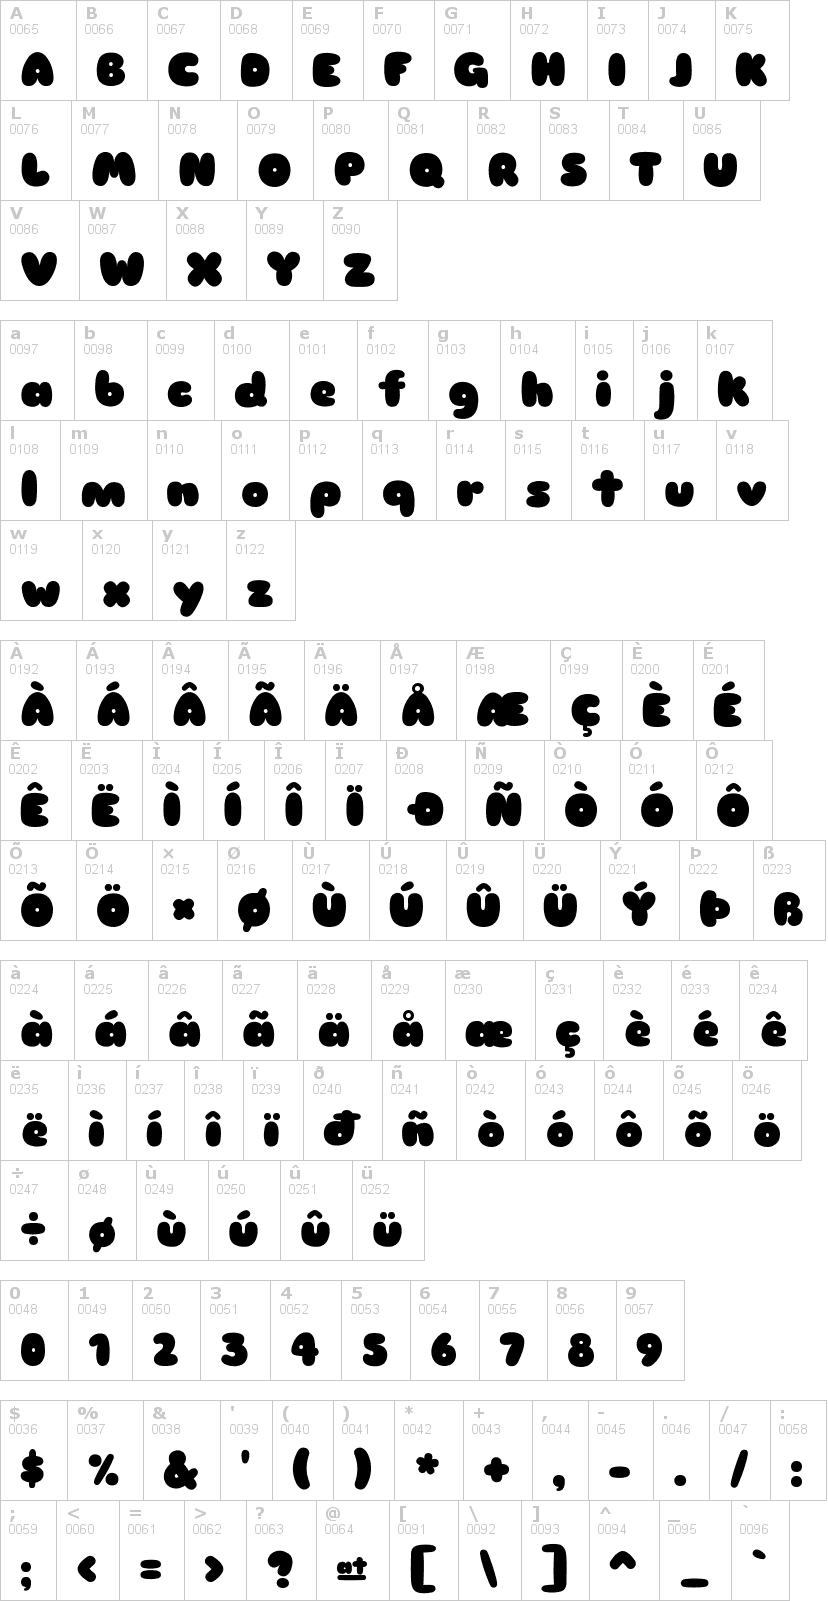 Lettere dell'alfabeto del font sniglet con le quali è possibile realizzare adesivi prespaziati